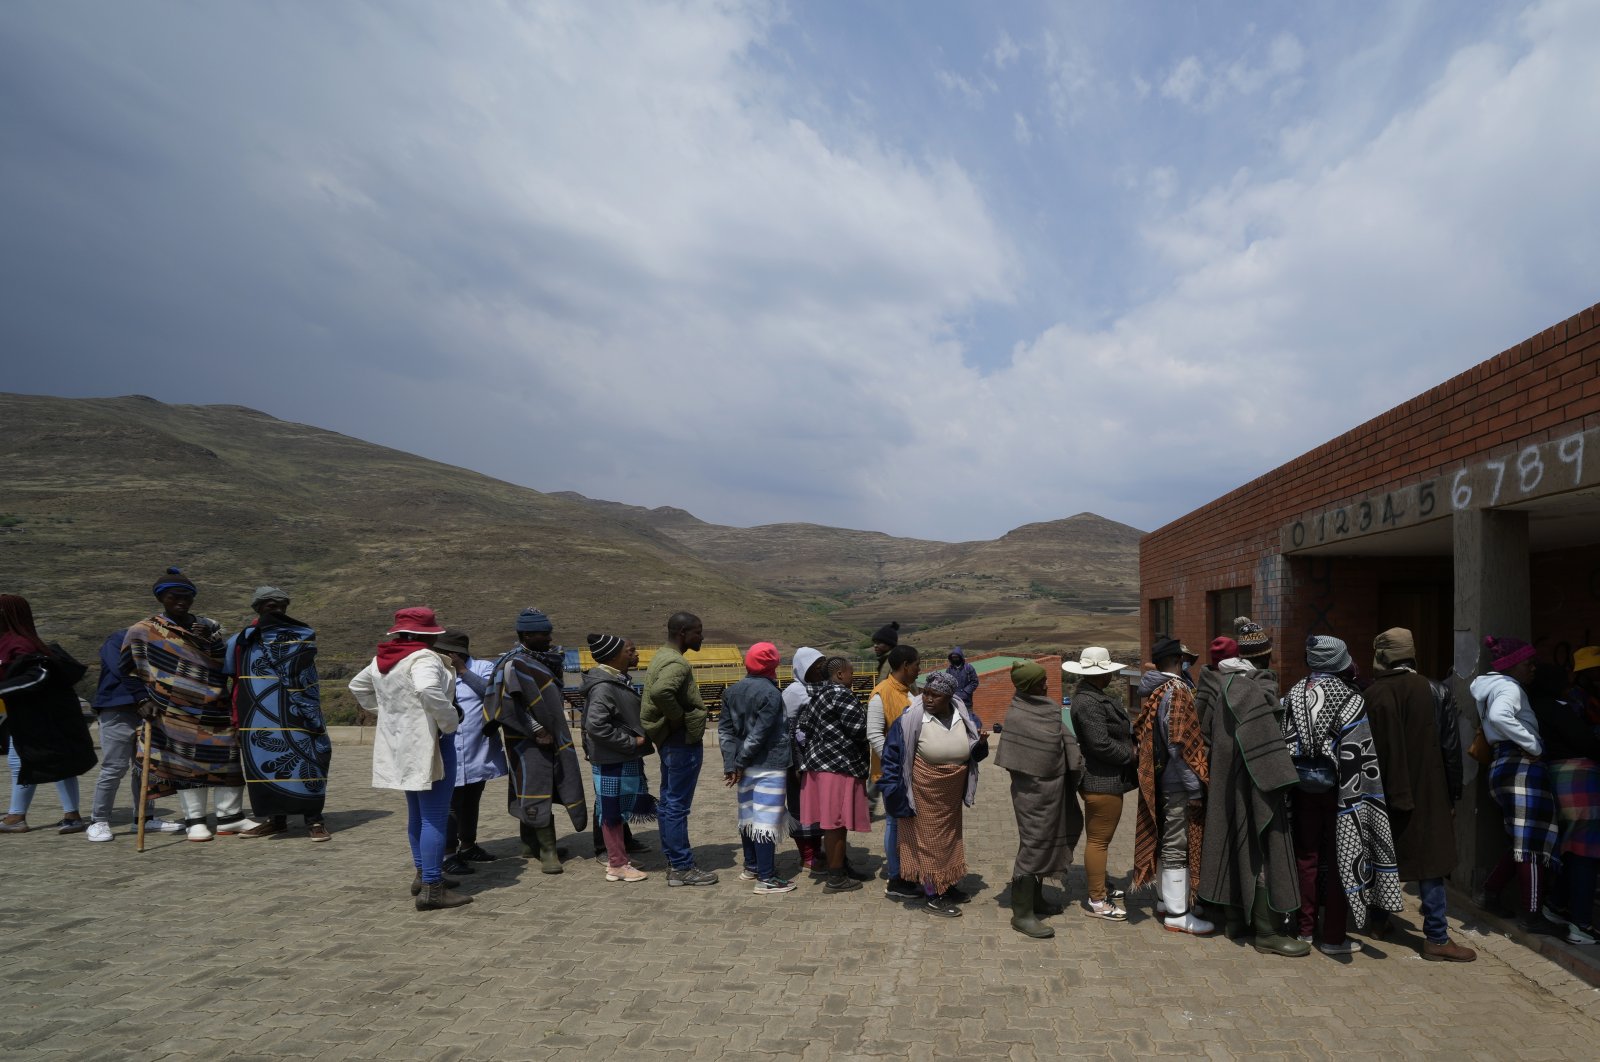 Ribuan orang pergi ke tempat pemungutan suara di kerajaan Lesotho di Afrika selatan